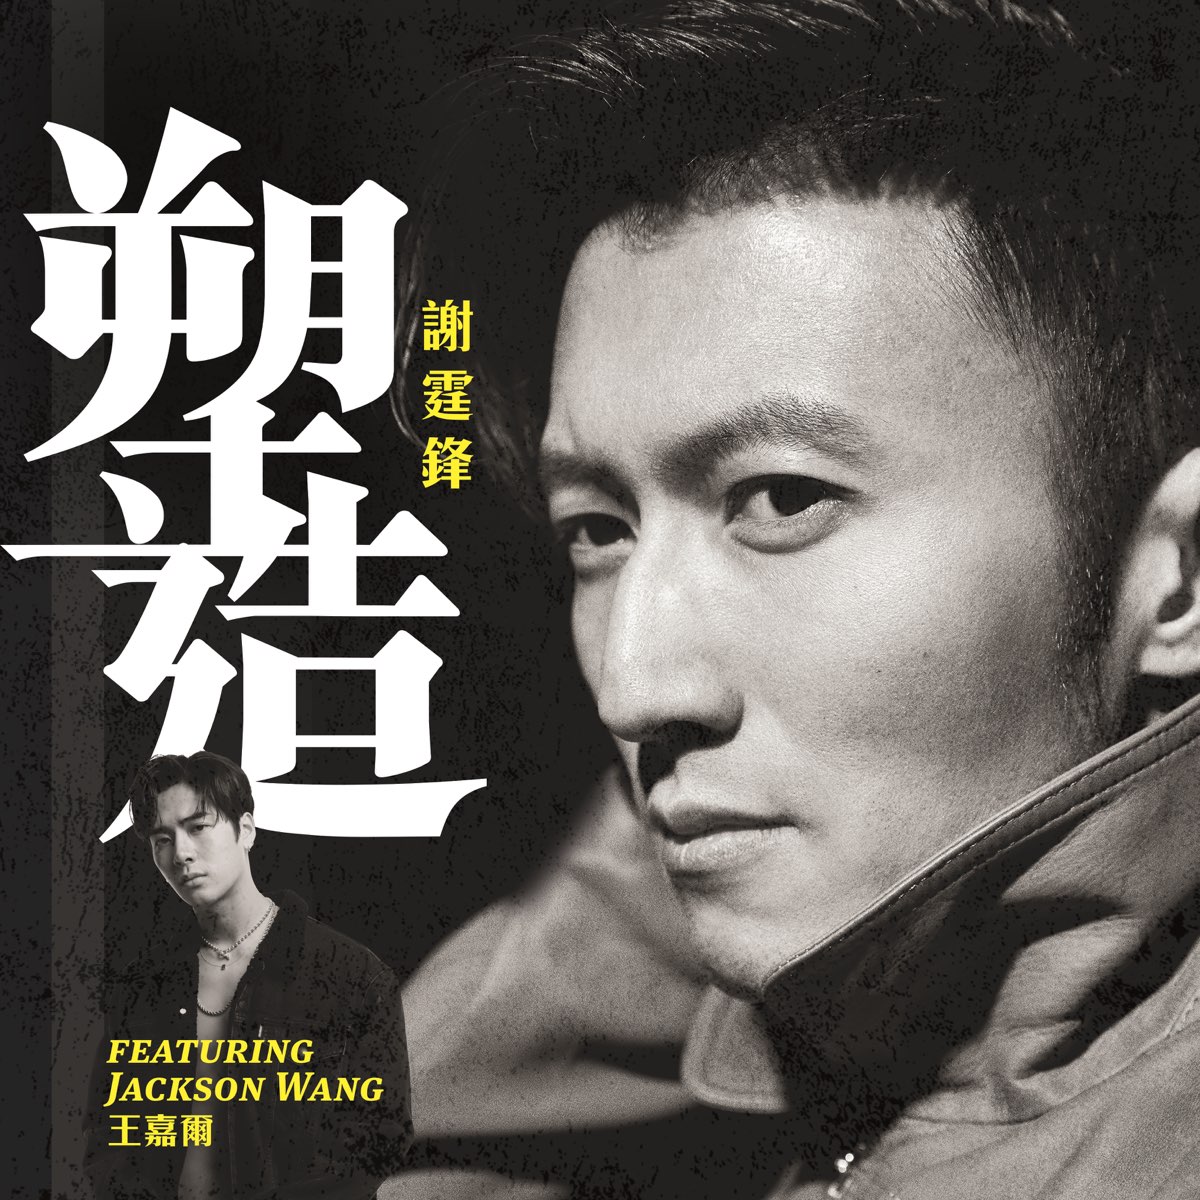 ‎塑造 Feat Jackson Wang Single By Nicholas Tse On Apple Music 3249